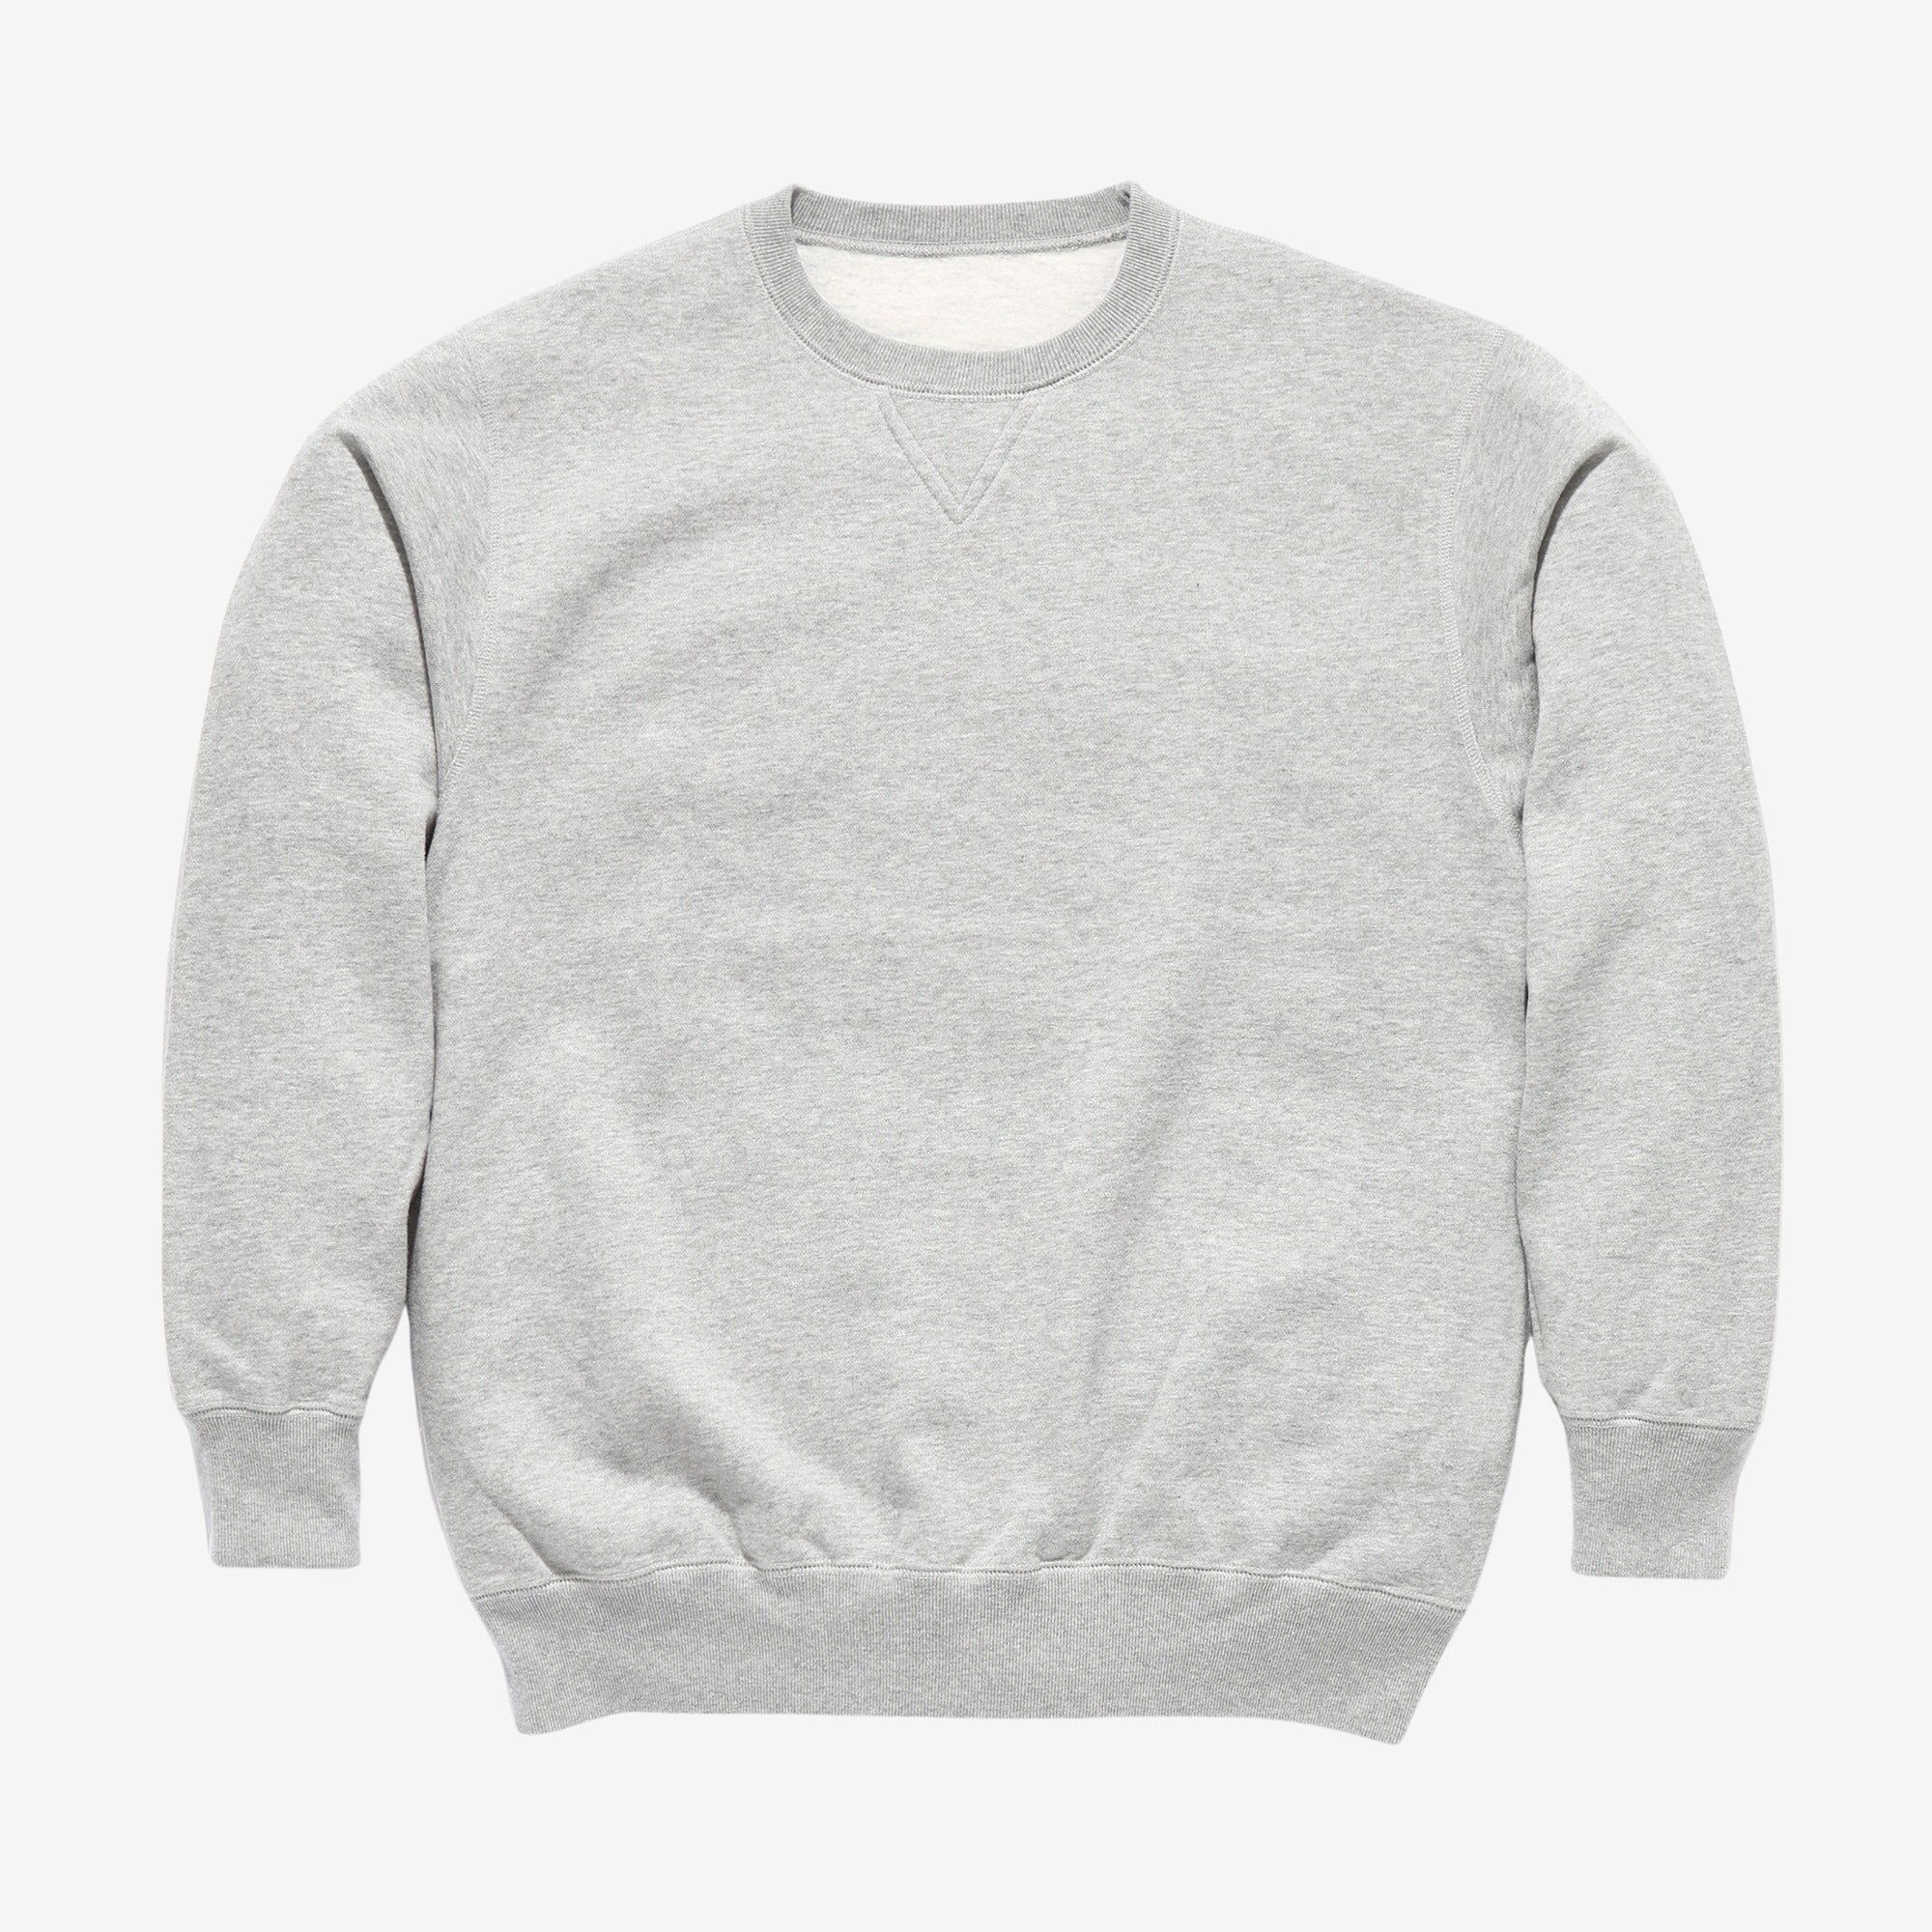 Fleece Sweatshirt - Grey Mix